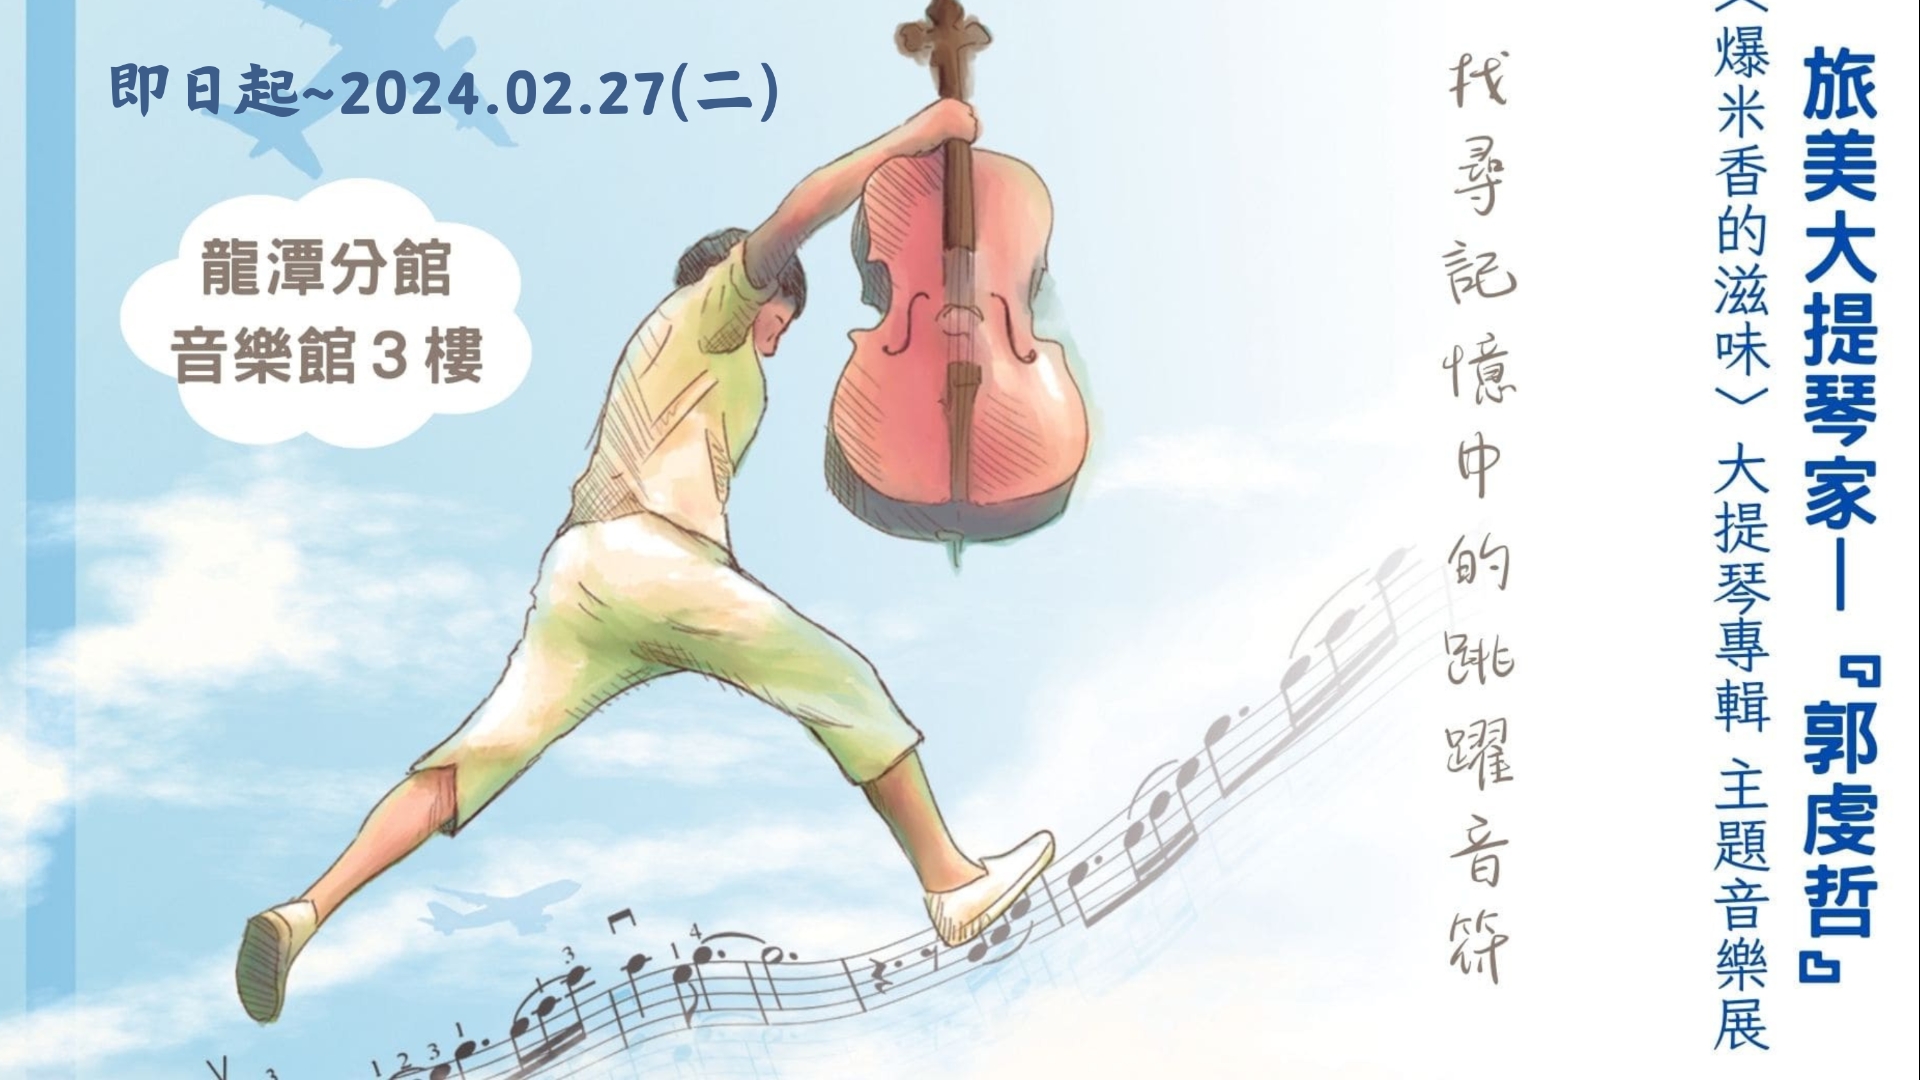 [龍潭特展]找尋記憶中的跳躍音符-「旅美大提琴家—『郭虔哲』大提琴專輯 主題音樂展」